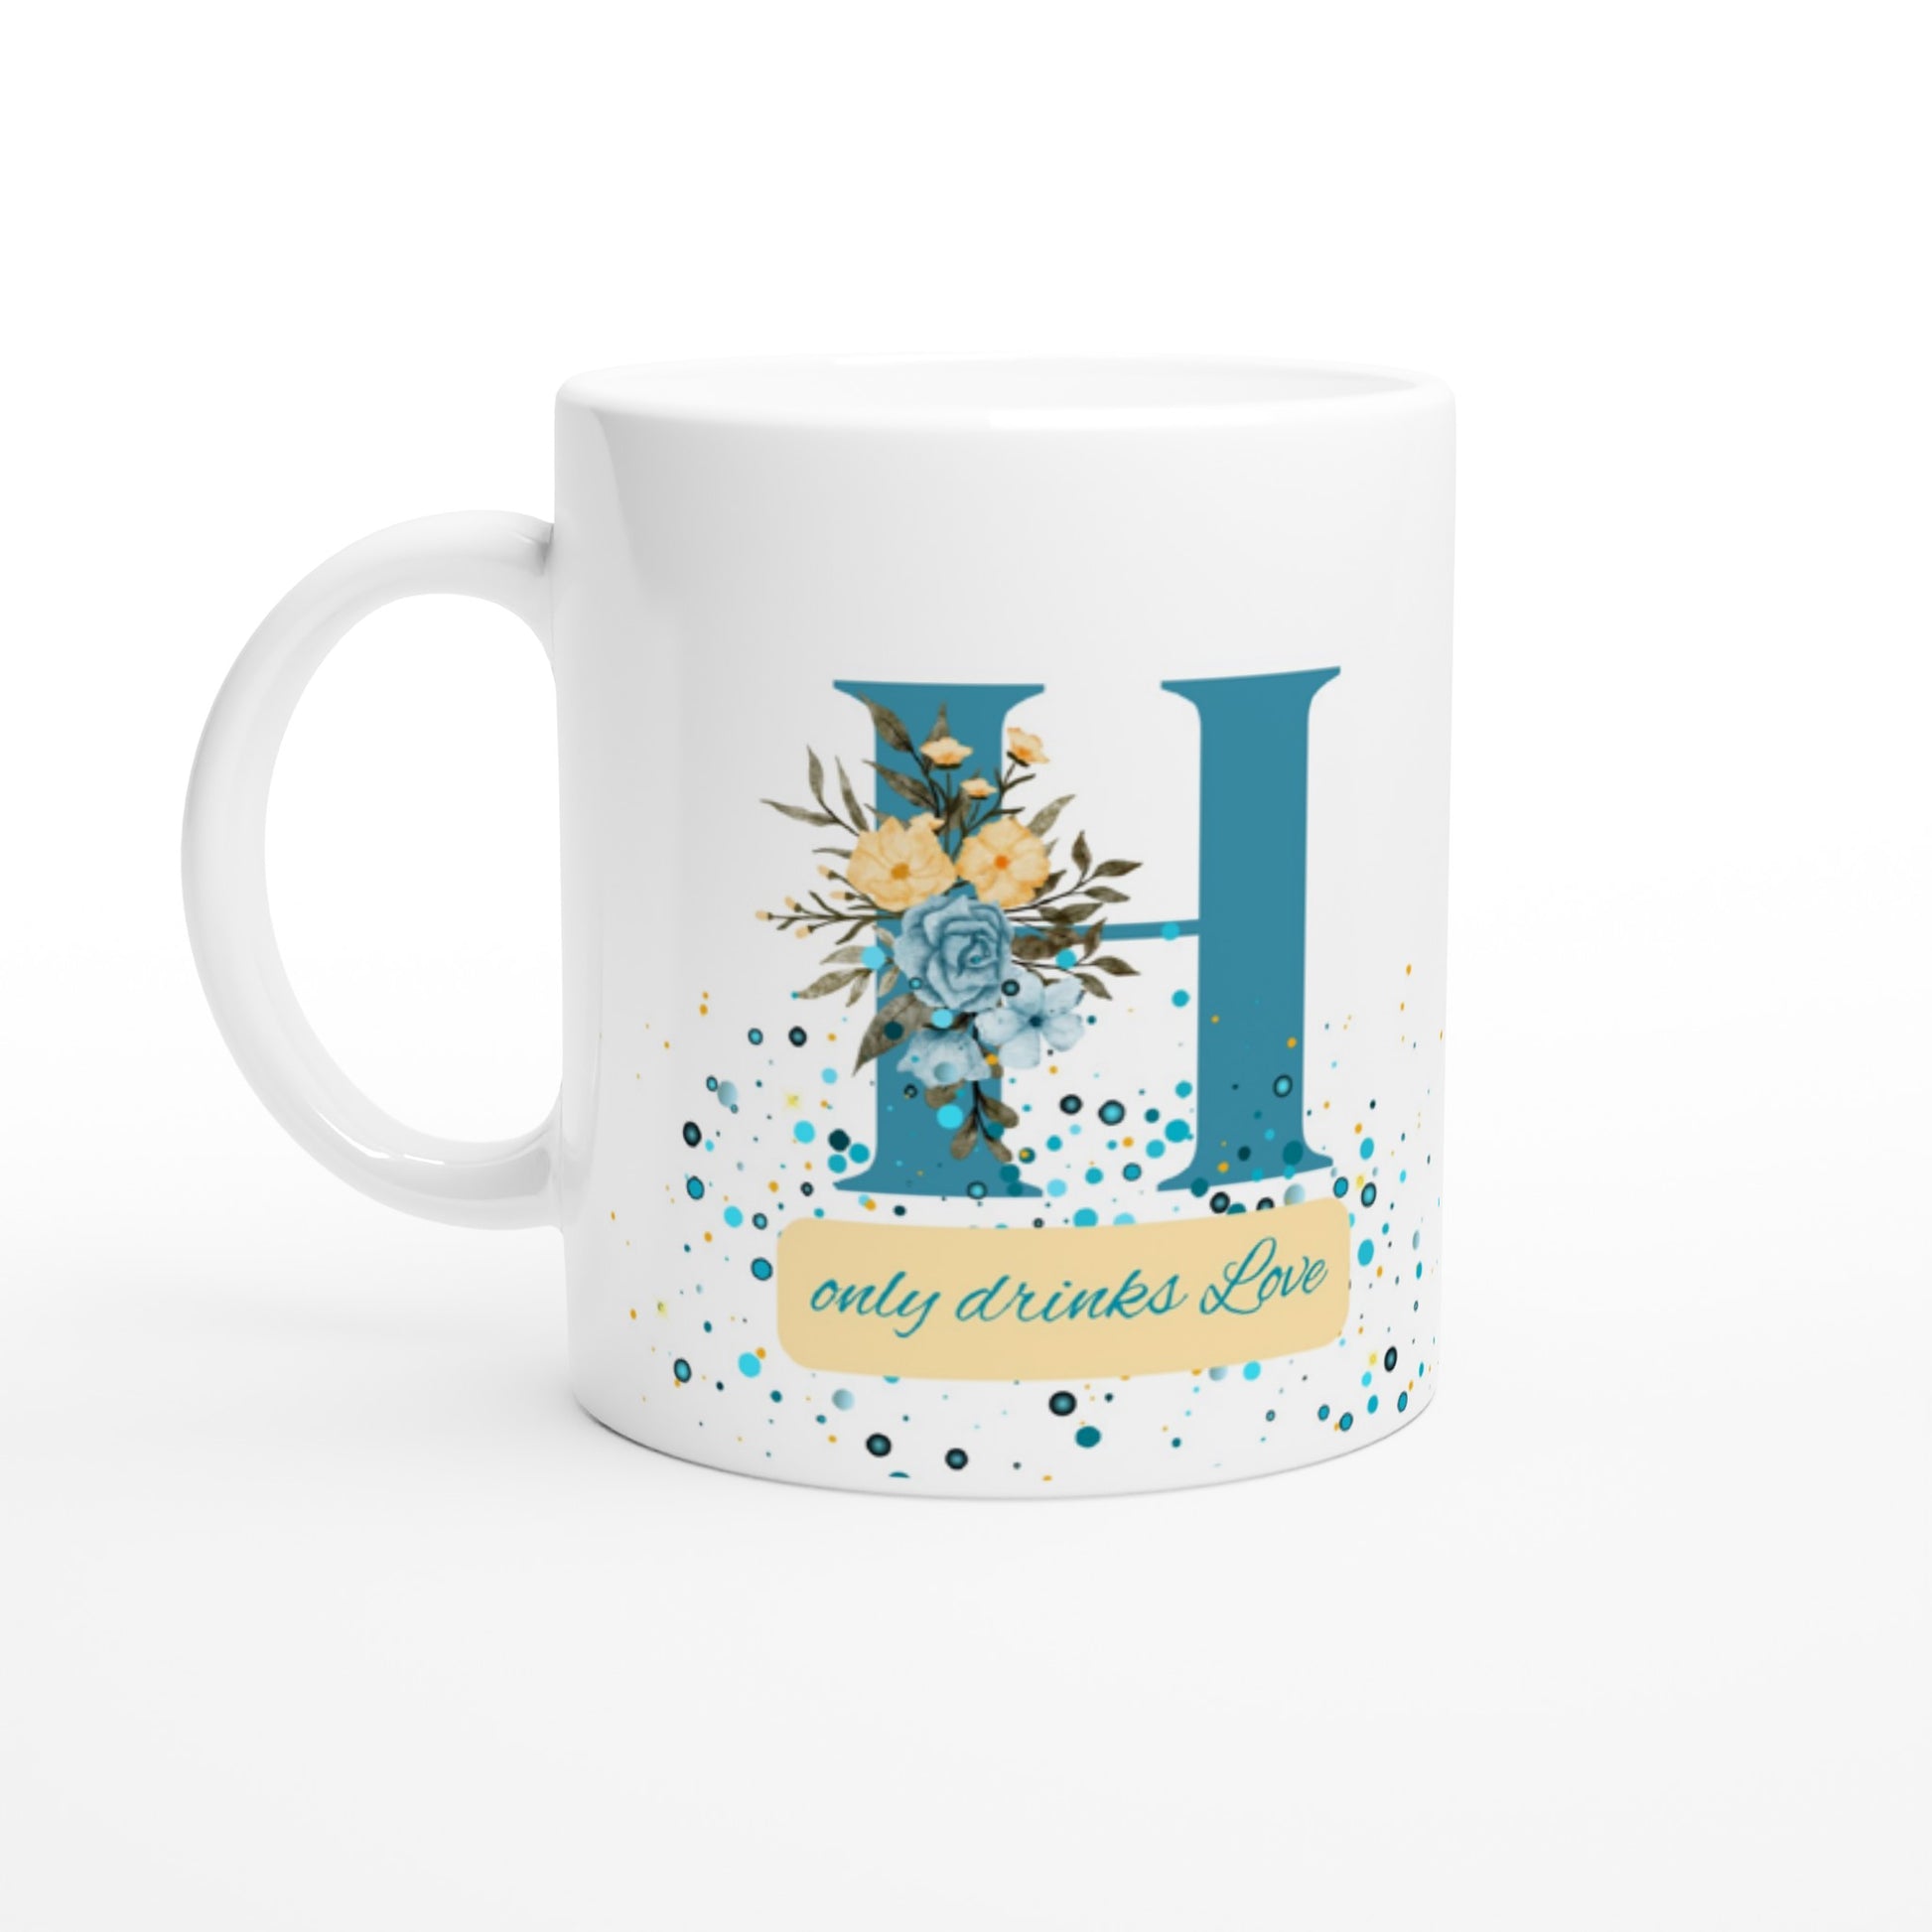 "H Only Drinks Love" White Mug with Blue Letter H - 11oz Ceramic Mug- Gift Idea